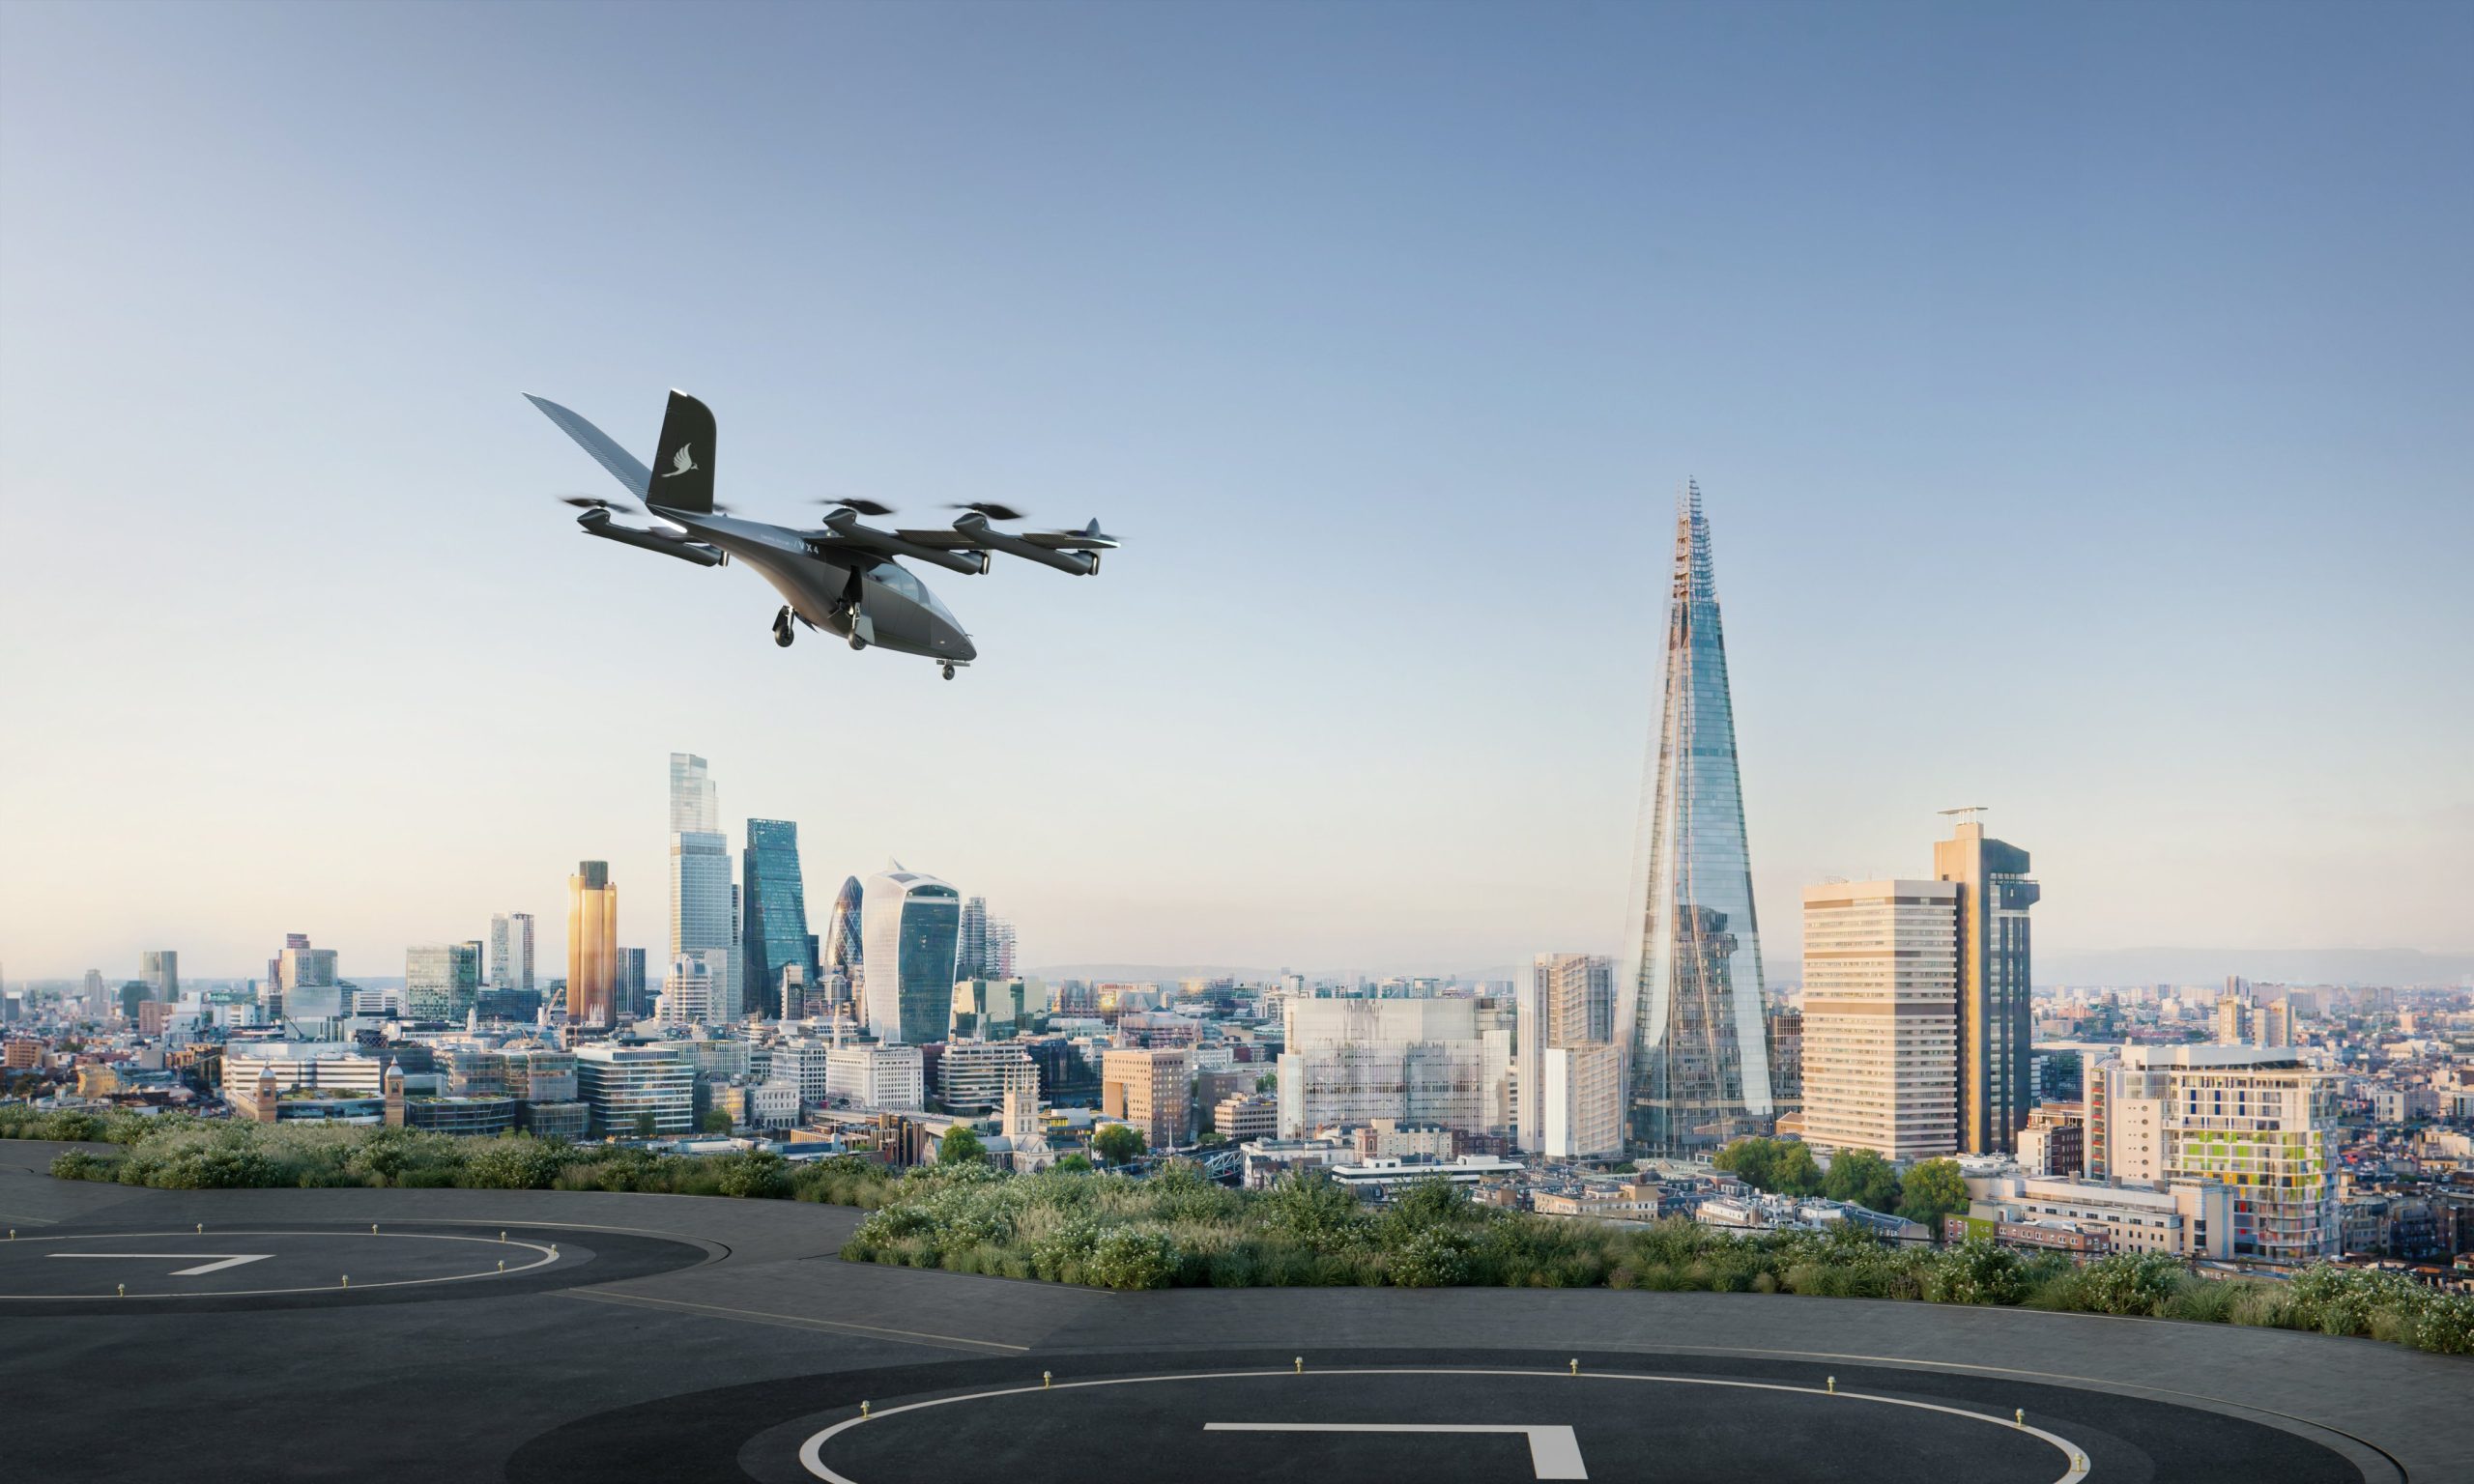 空飛ぶタクシーと配送用ドローン、2030年までに英国の空へ